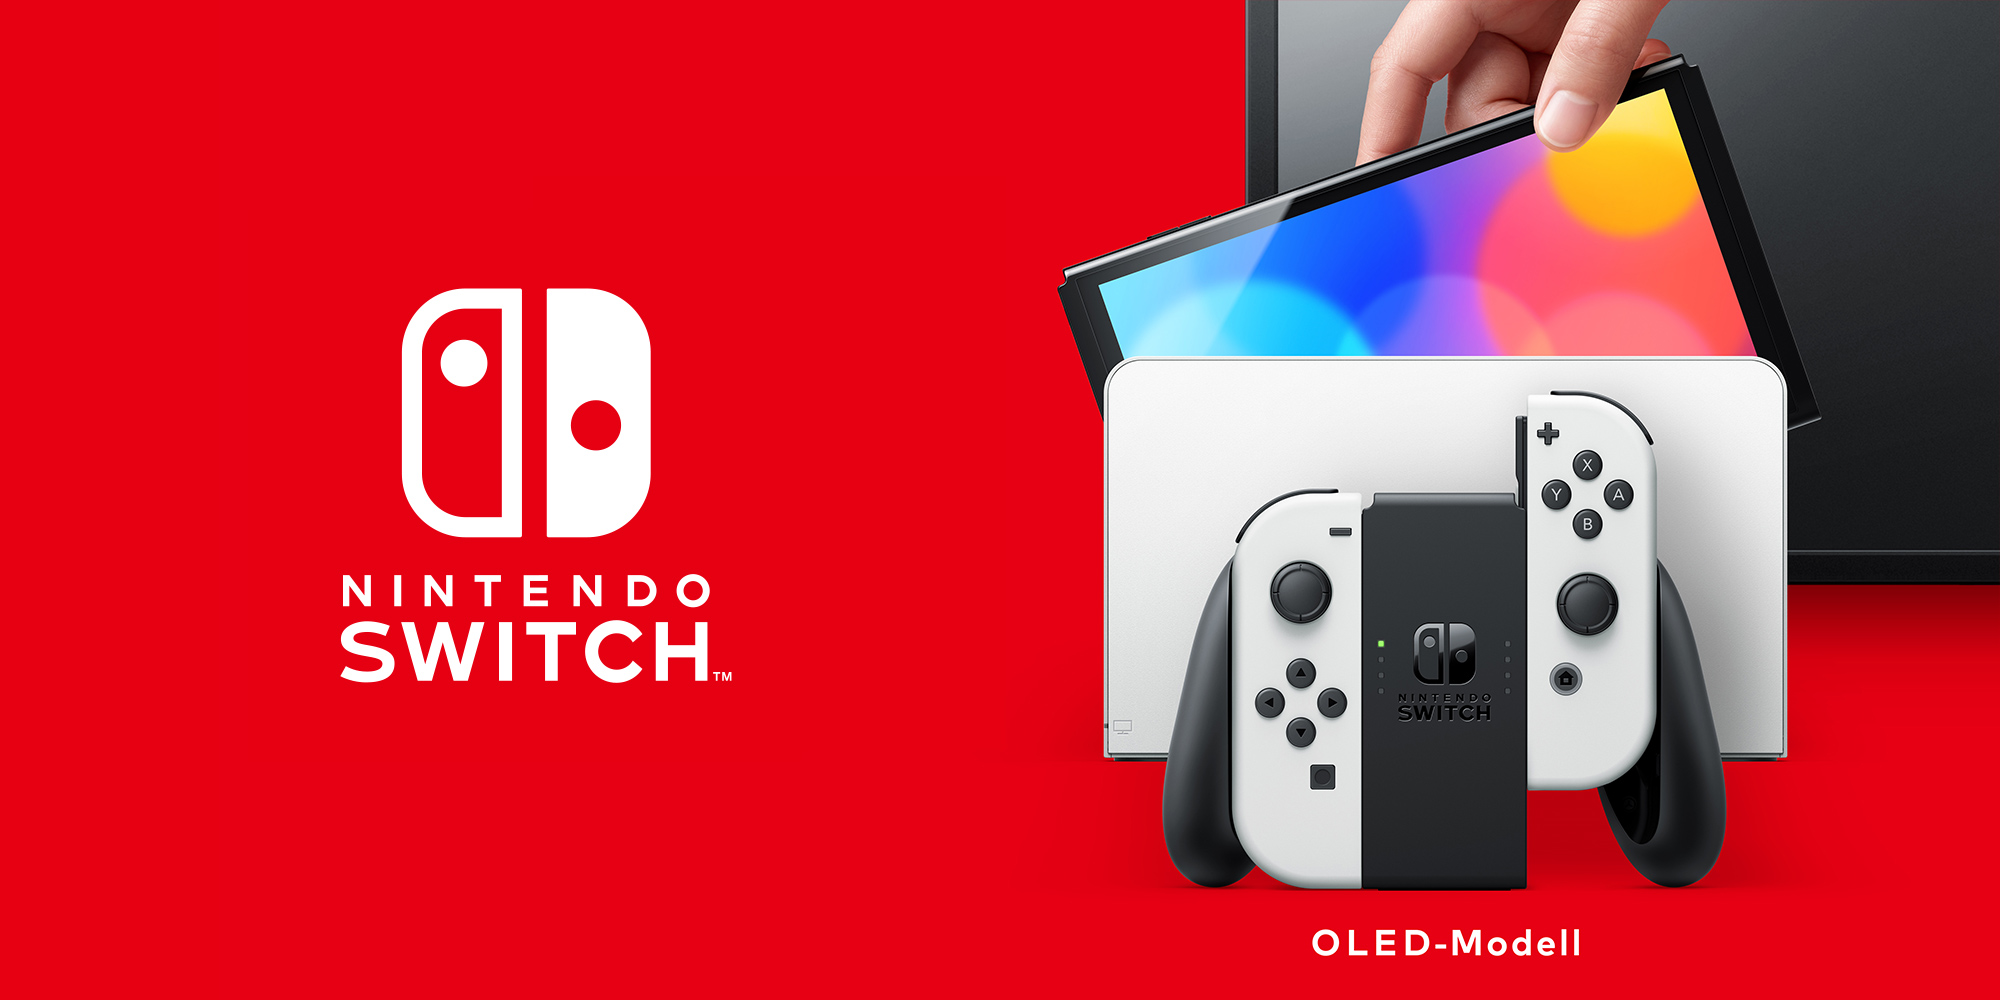 Nintendo Switch – | OLED-Modell | Nintendo Hardware